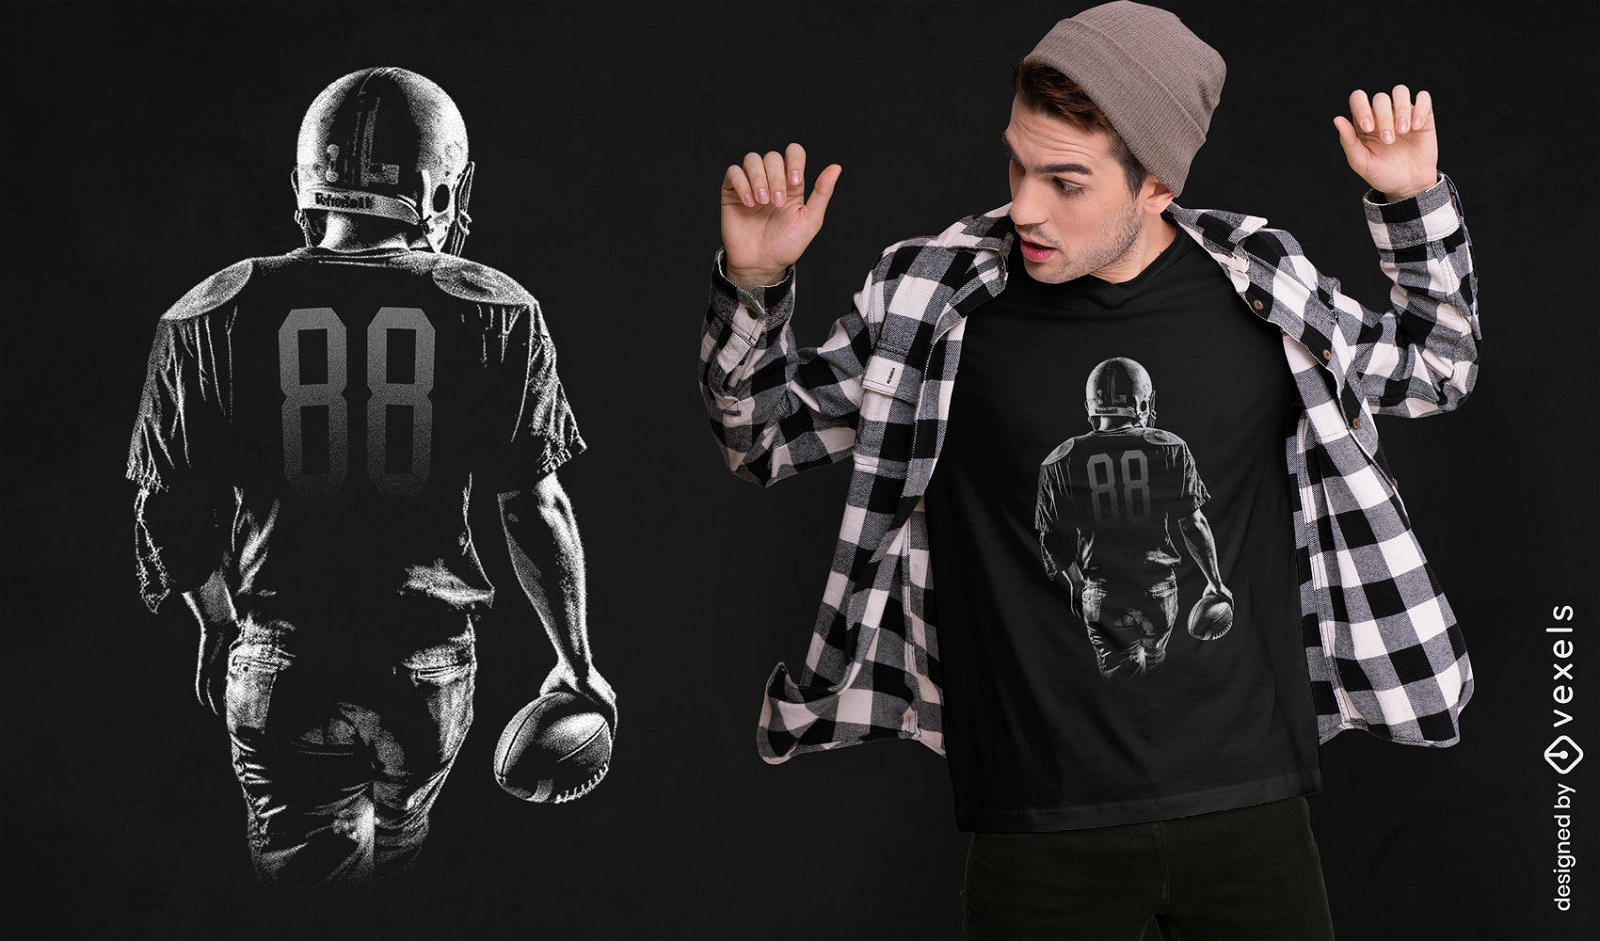 Diseño de camiseta de jugador de fútbol americano desde detrás.